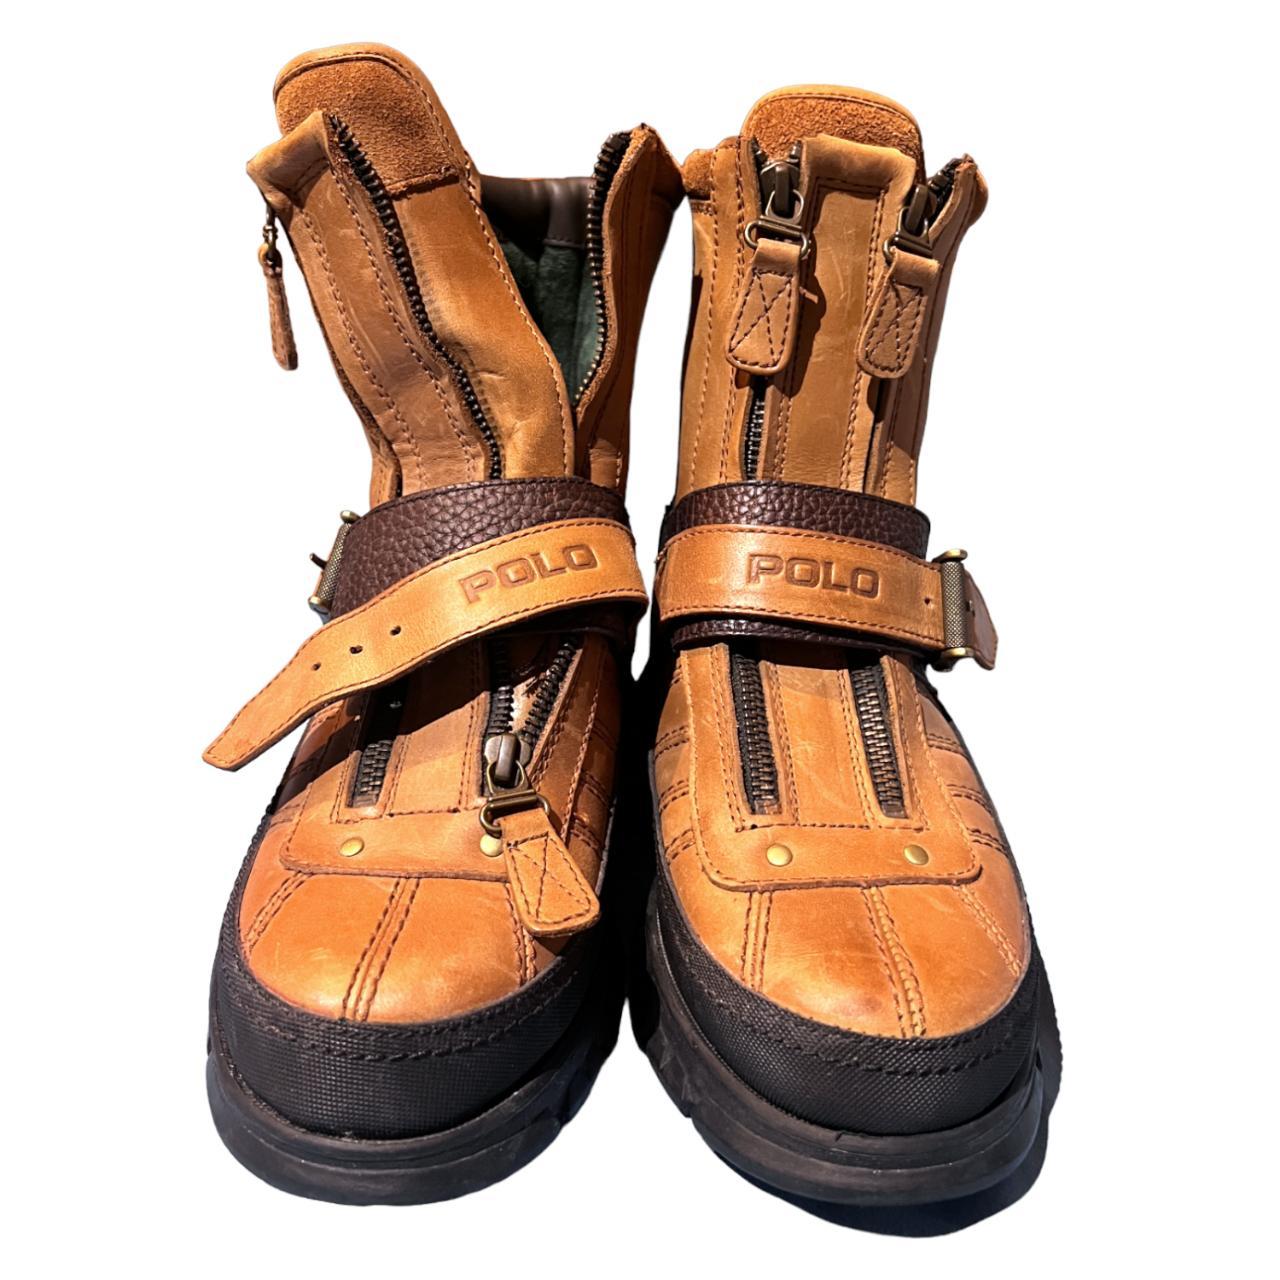 Polo Ralph Lauren Mens Boots Conquest Hi 3 Brown... - Depop